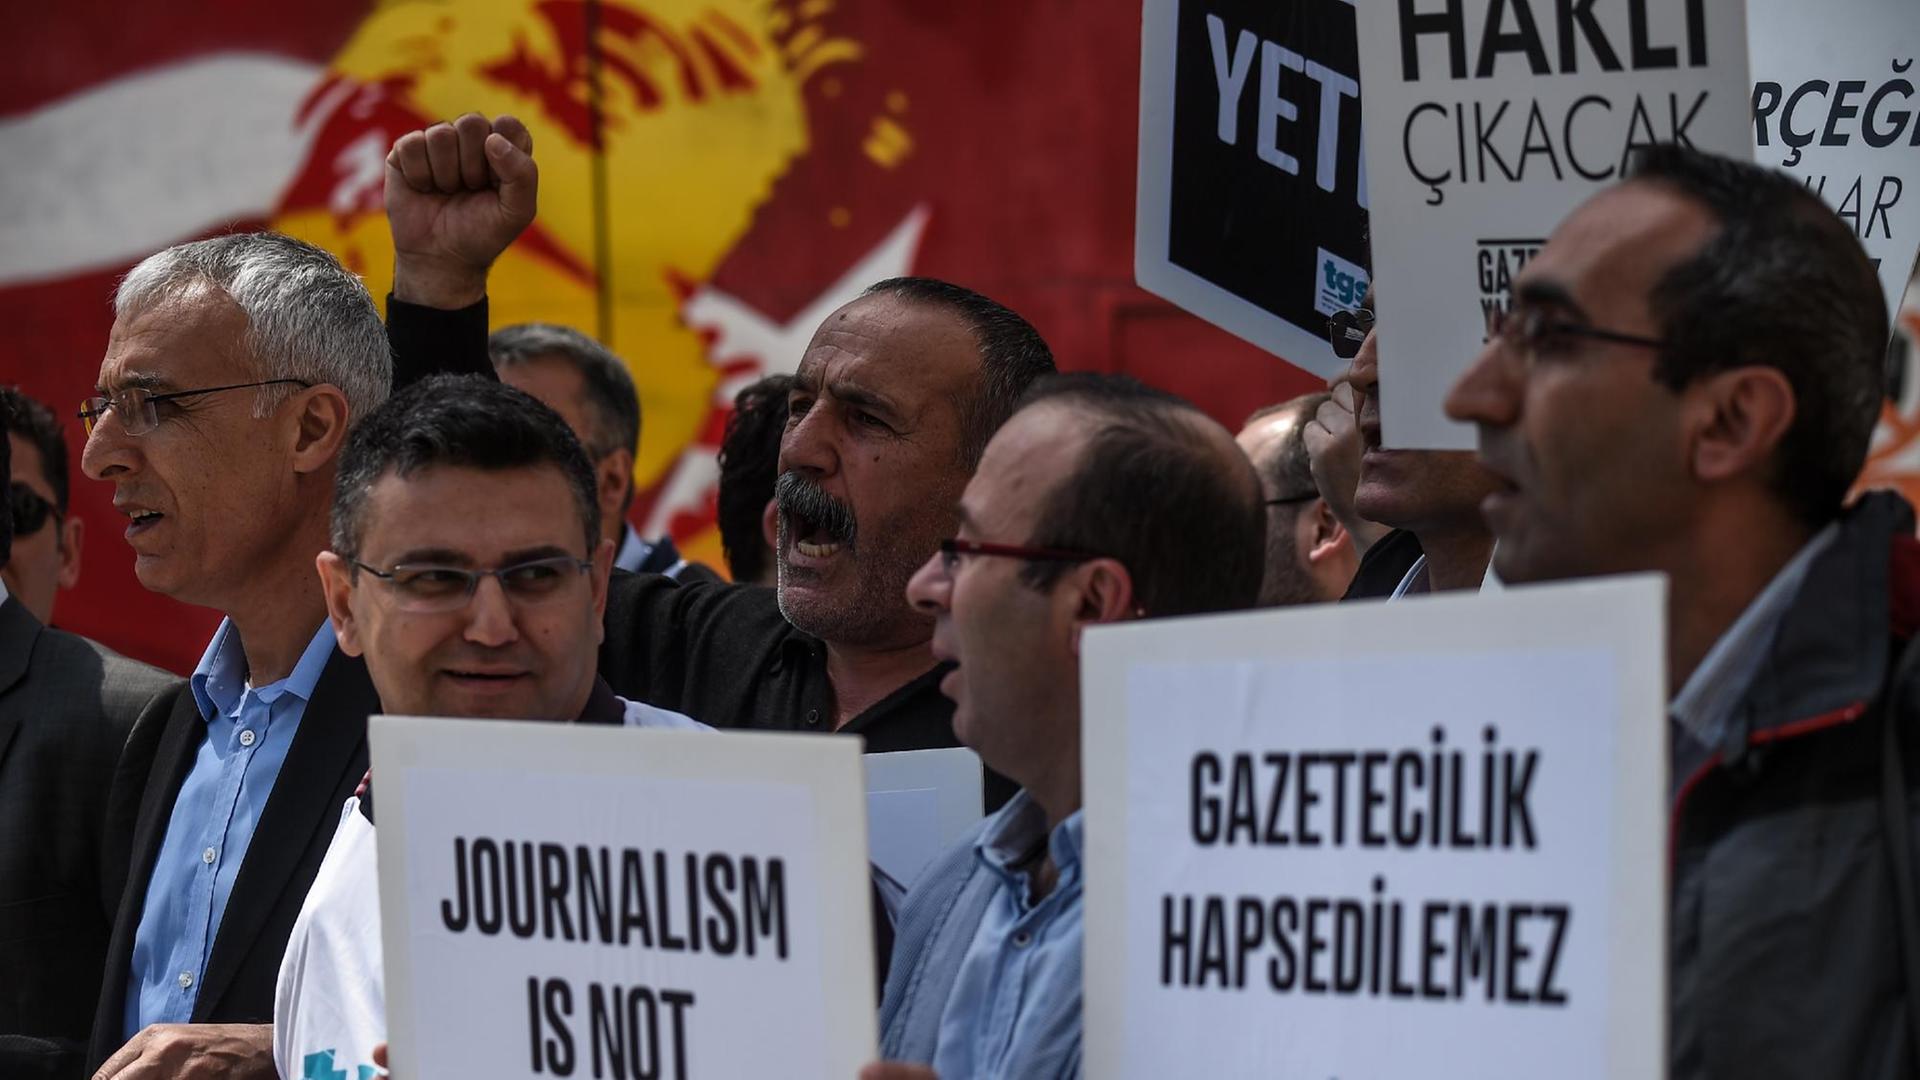 Mehrere Männer stehen in einer Menge, einige halten Plakate mit der Aufschrift "Journalismus ist kein Verbrechen".